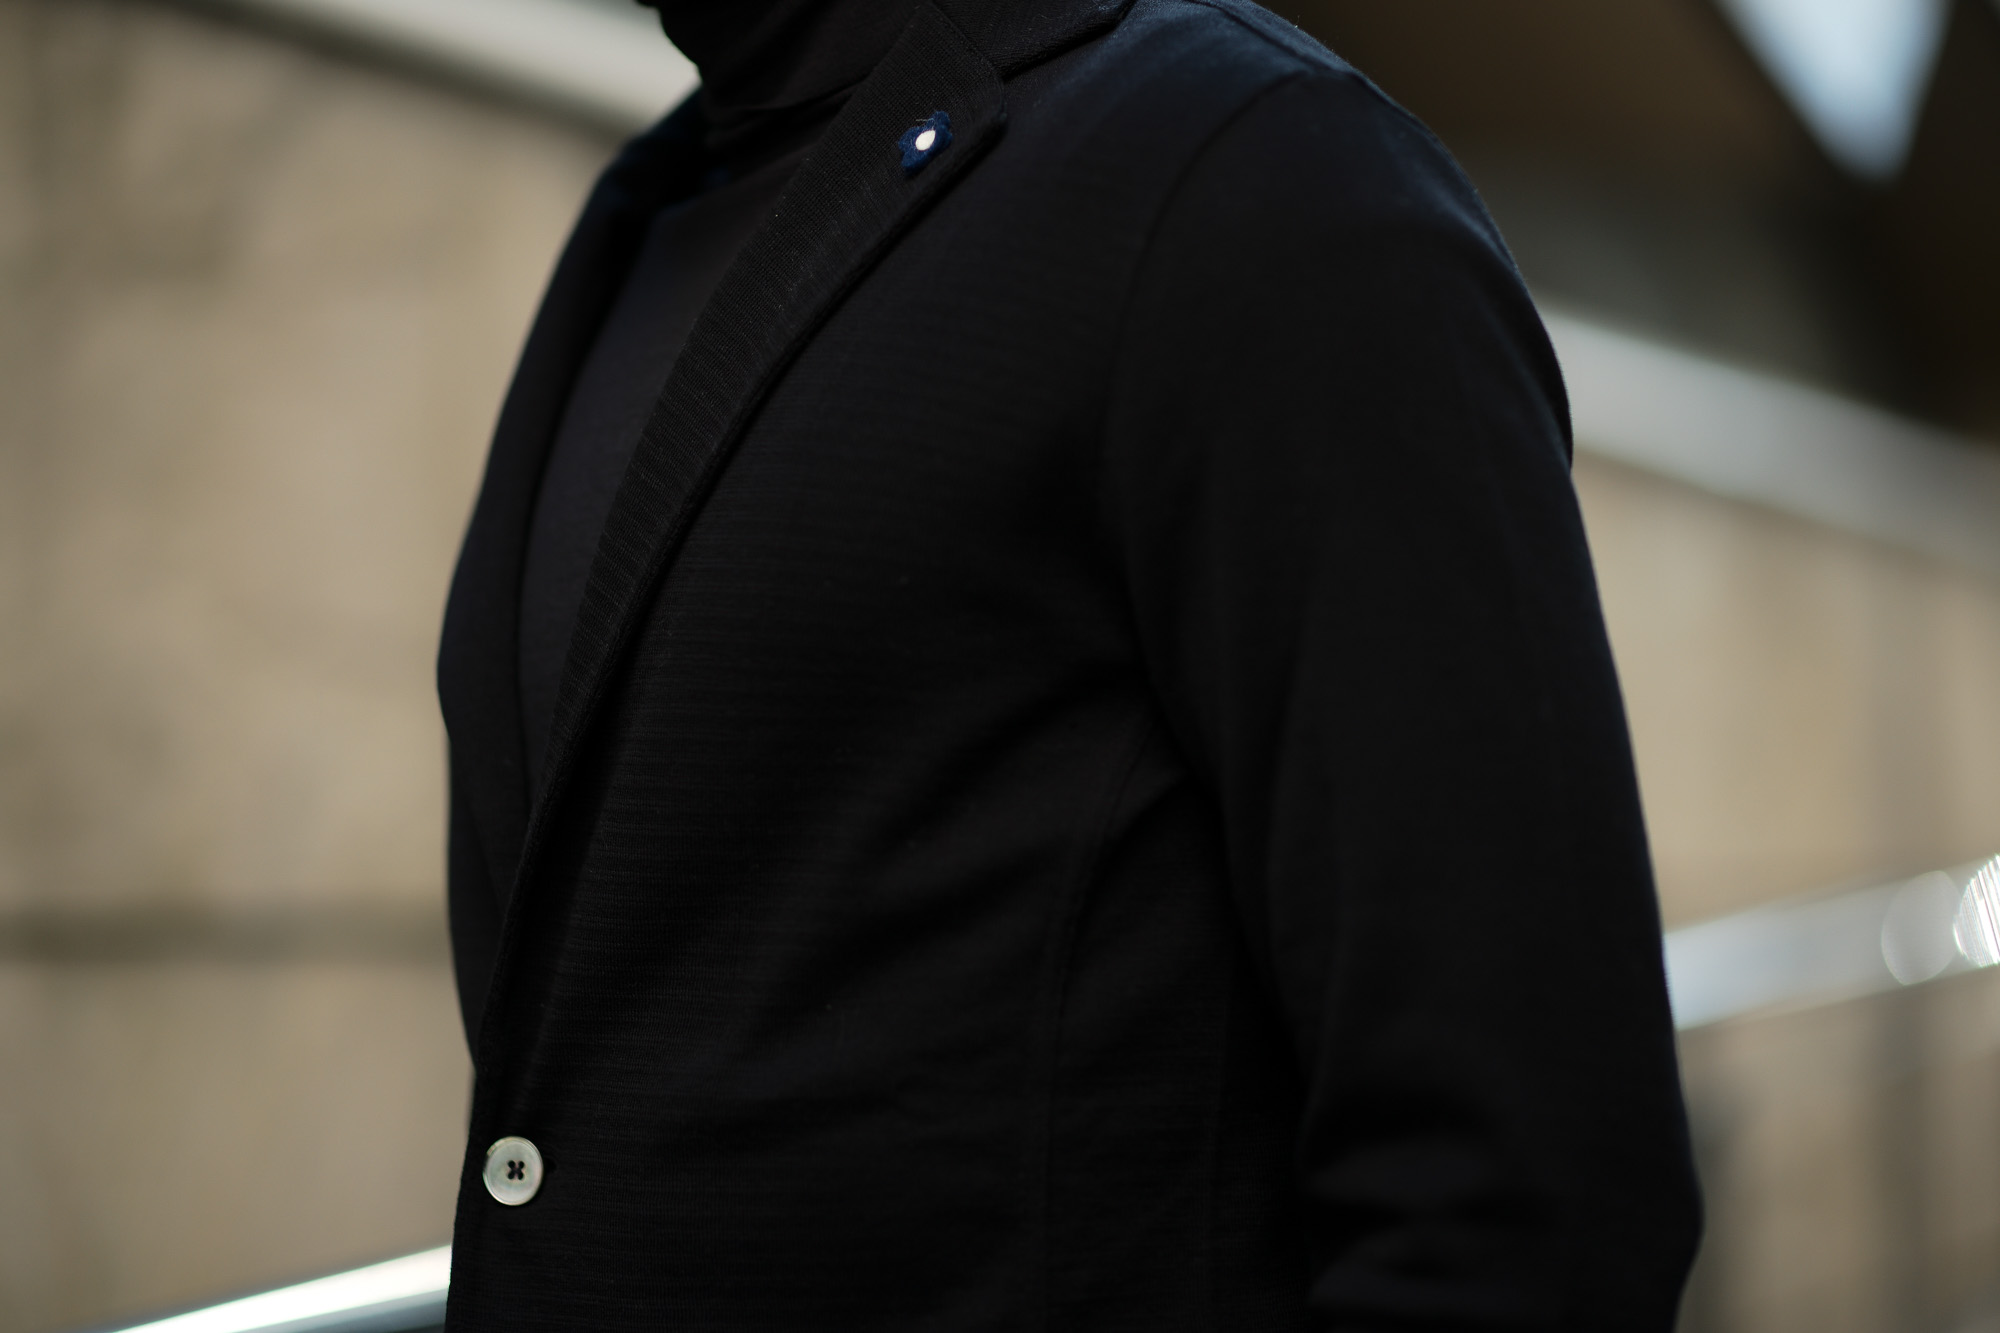 LARDINI (ラルディーニ) Milano Rib Knit Jacket (ミラノリブ ニット ジャケット) コットン ミラノリブ 2B ニットジャケット BLACK (ブラック・999) Made in italy (イタリア製) 2019 春夏新作 愛知 名古屋 alto e diritto アルトエデリット